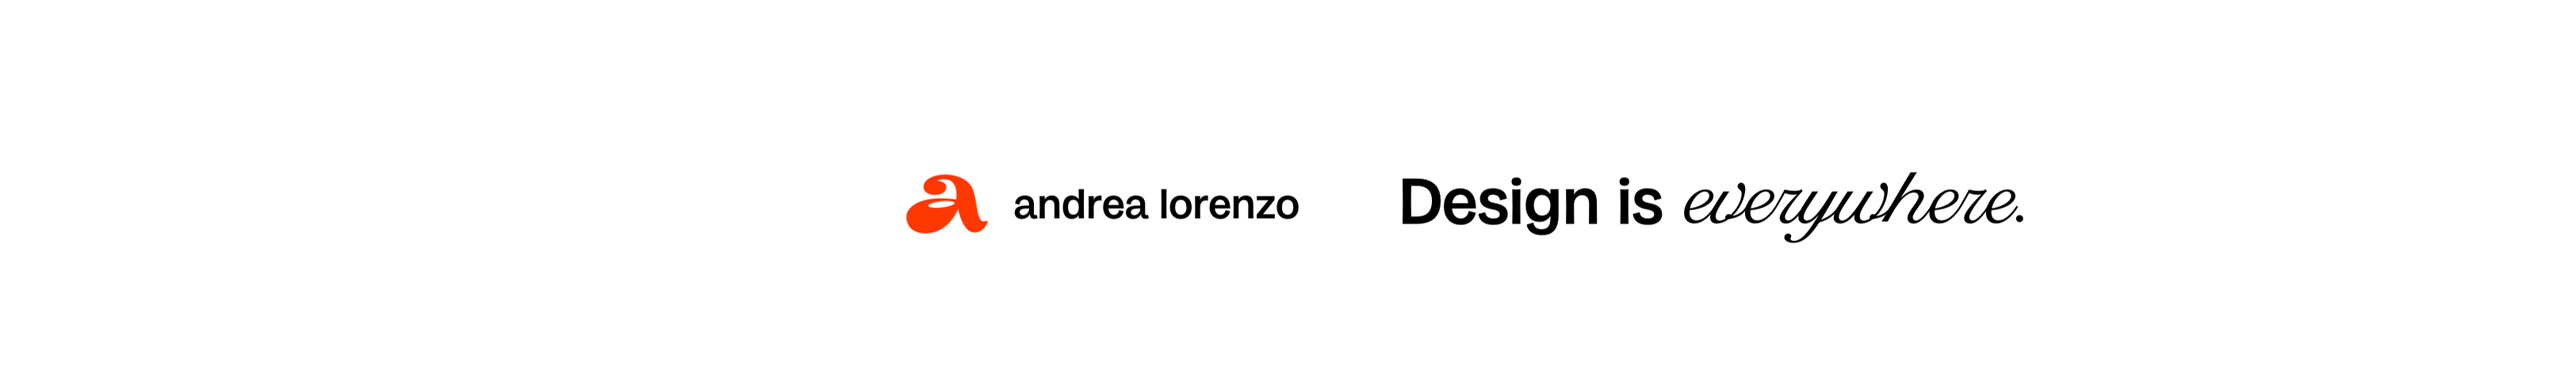 Andrea Lorenzo's profile banner